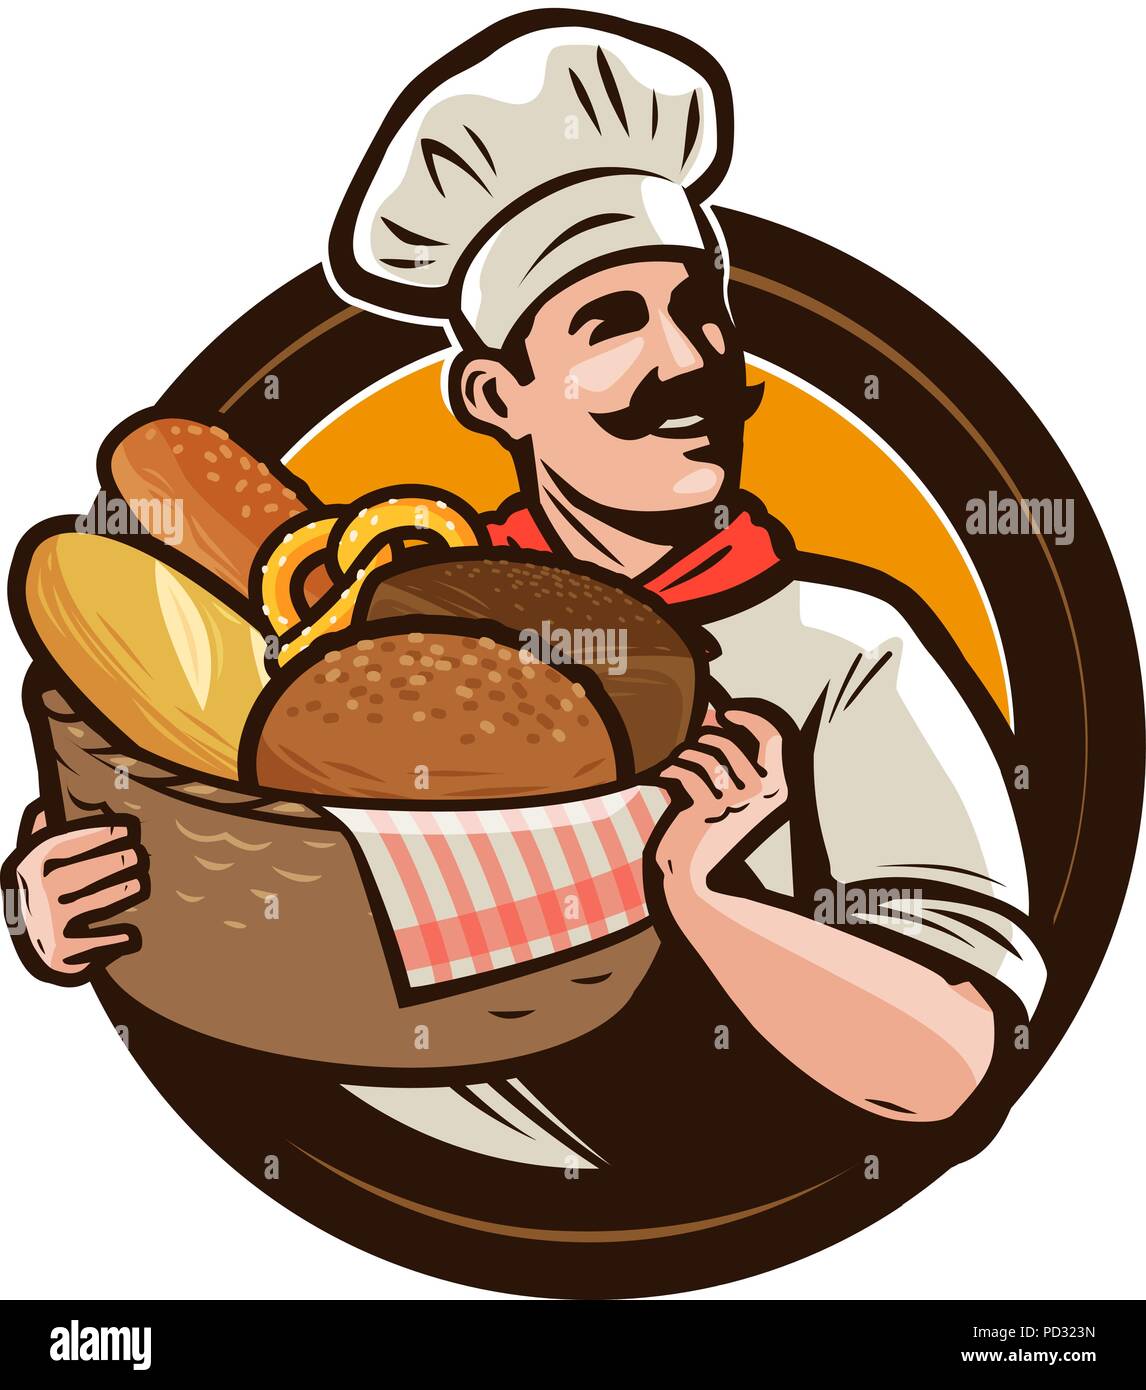 Bäckerei, backhaus Logo oder Label. Bäcker mit einem Weidenkorb von frisch gebackenem Brot. Vector Illustration Stock Vektor